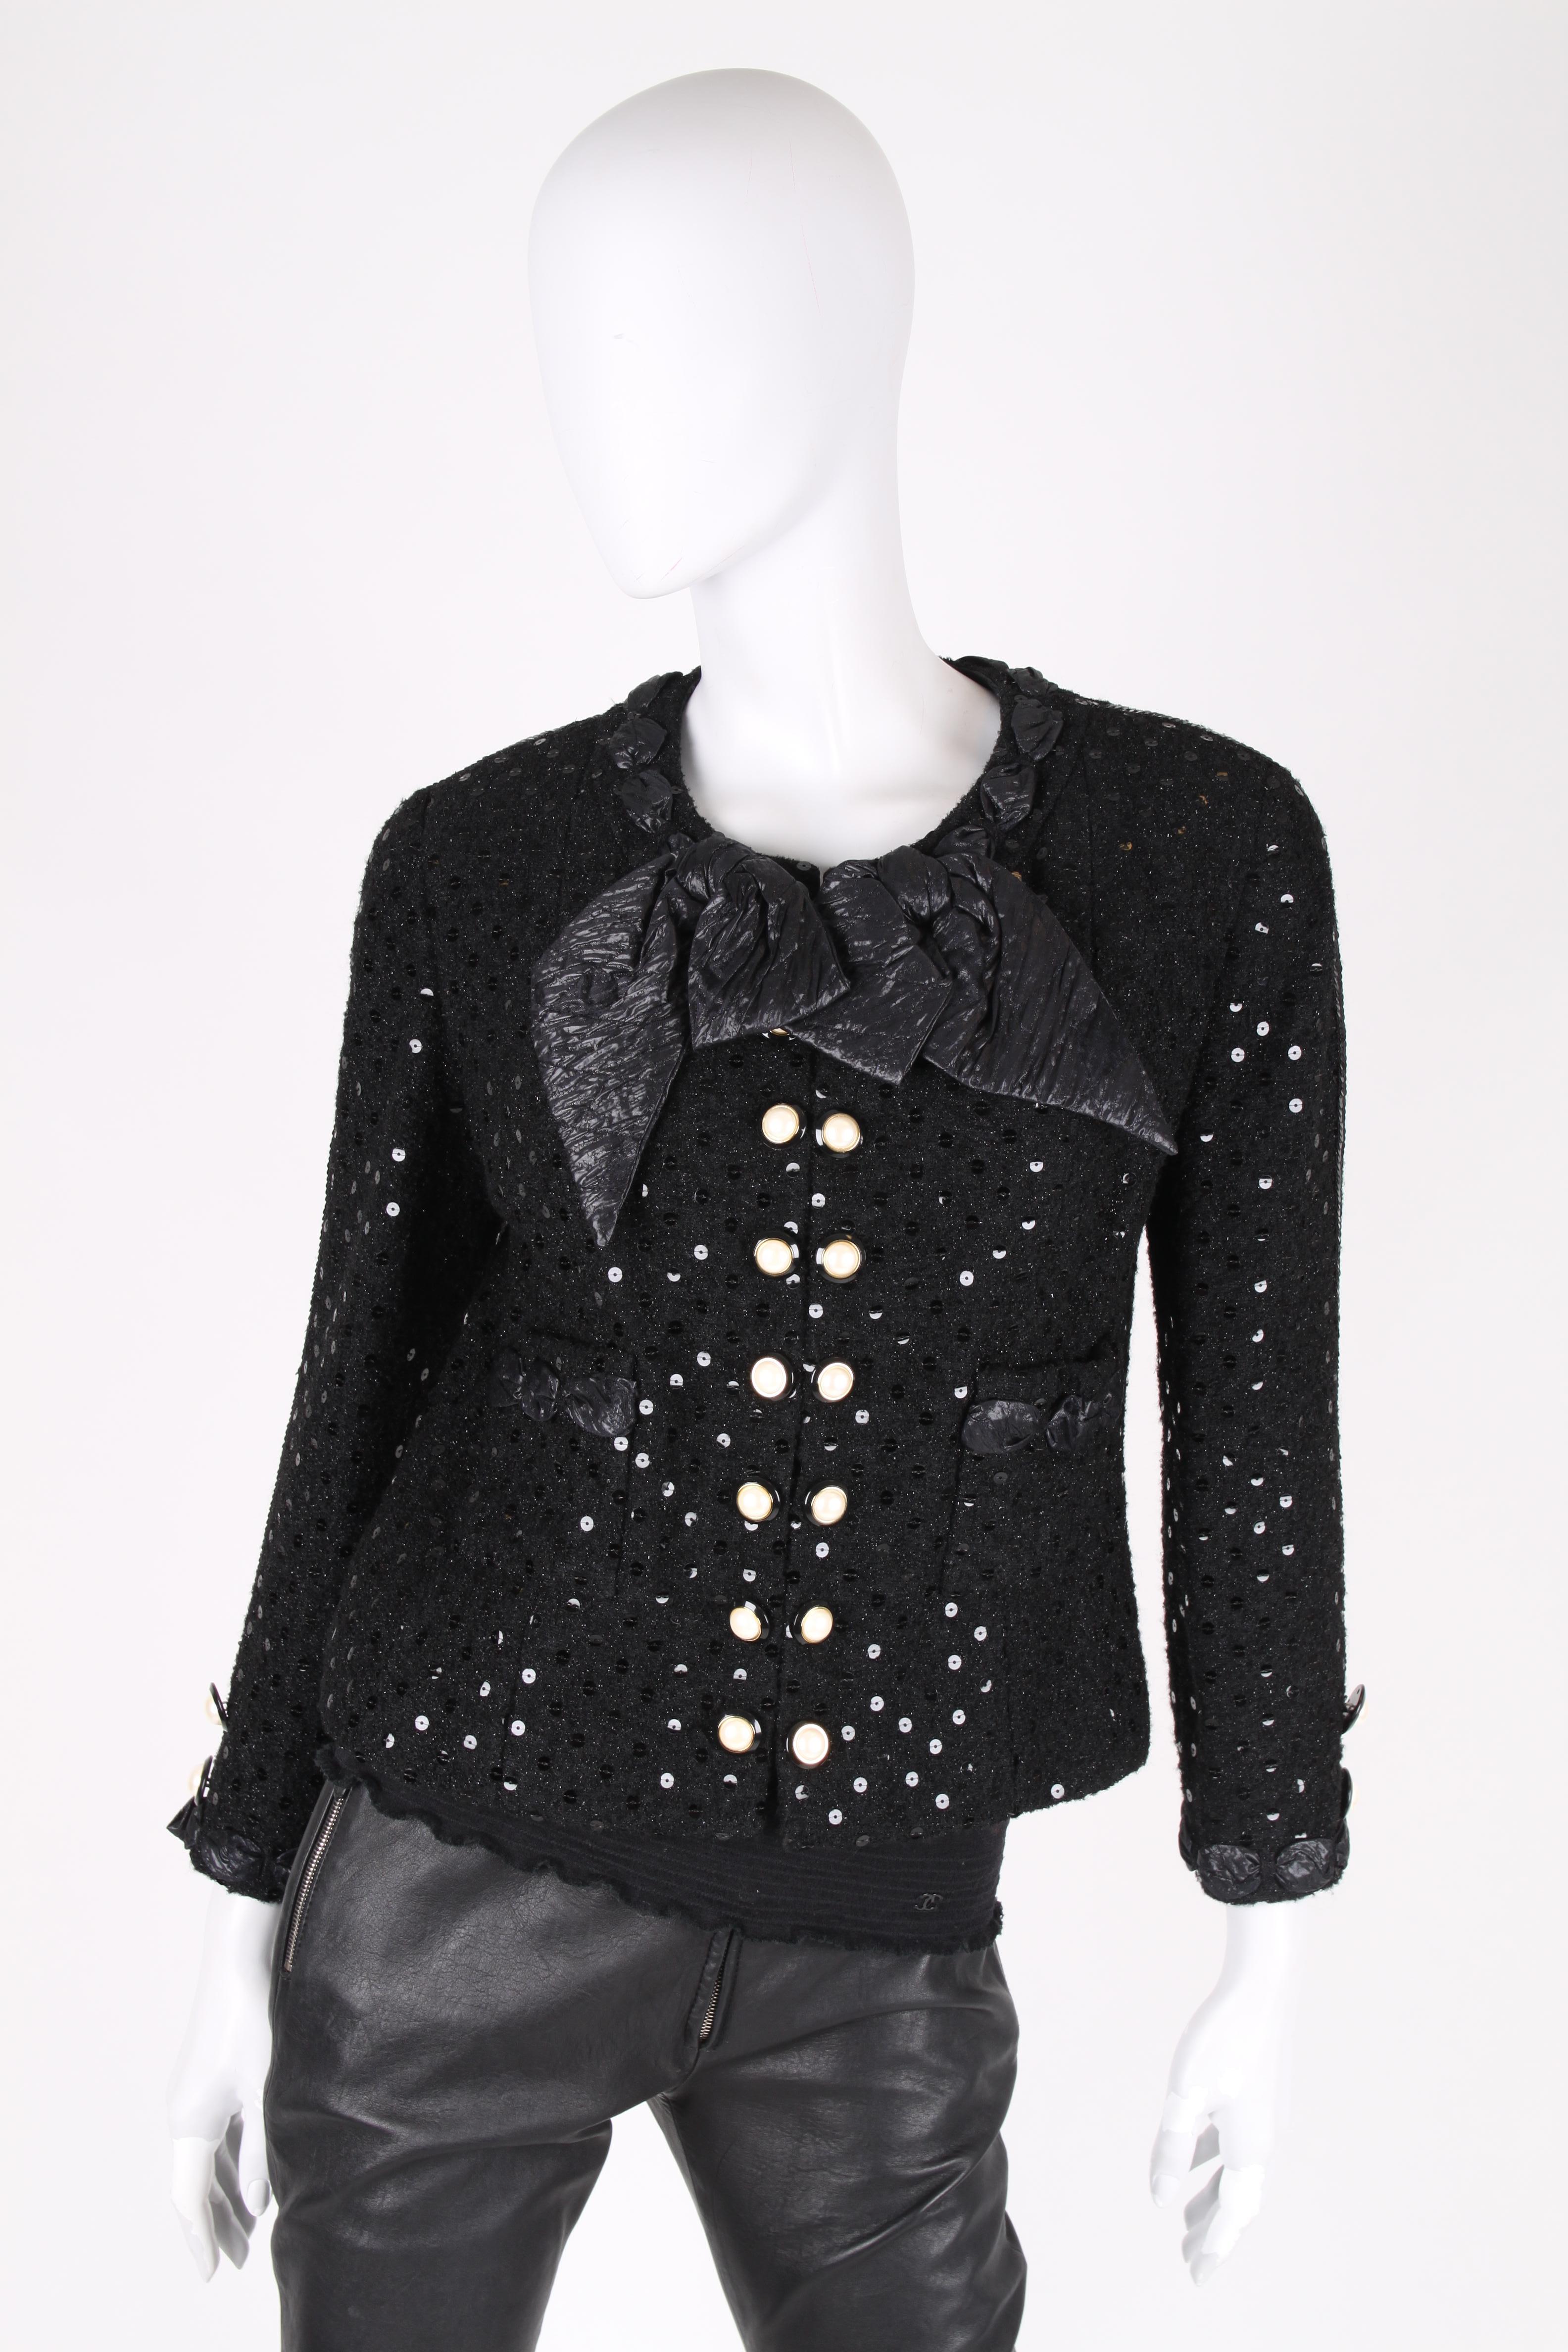 Chanel 2-pcs Sequin Suit Jacket & Skirt - black 1983 1